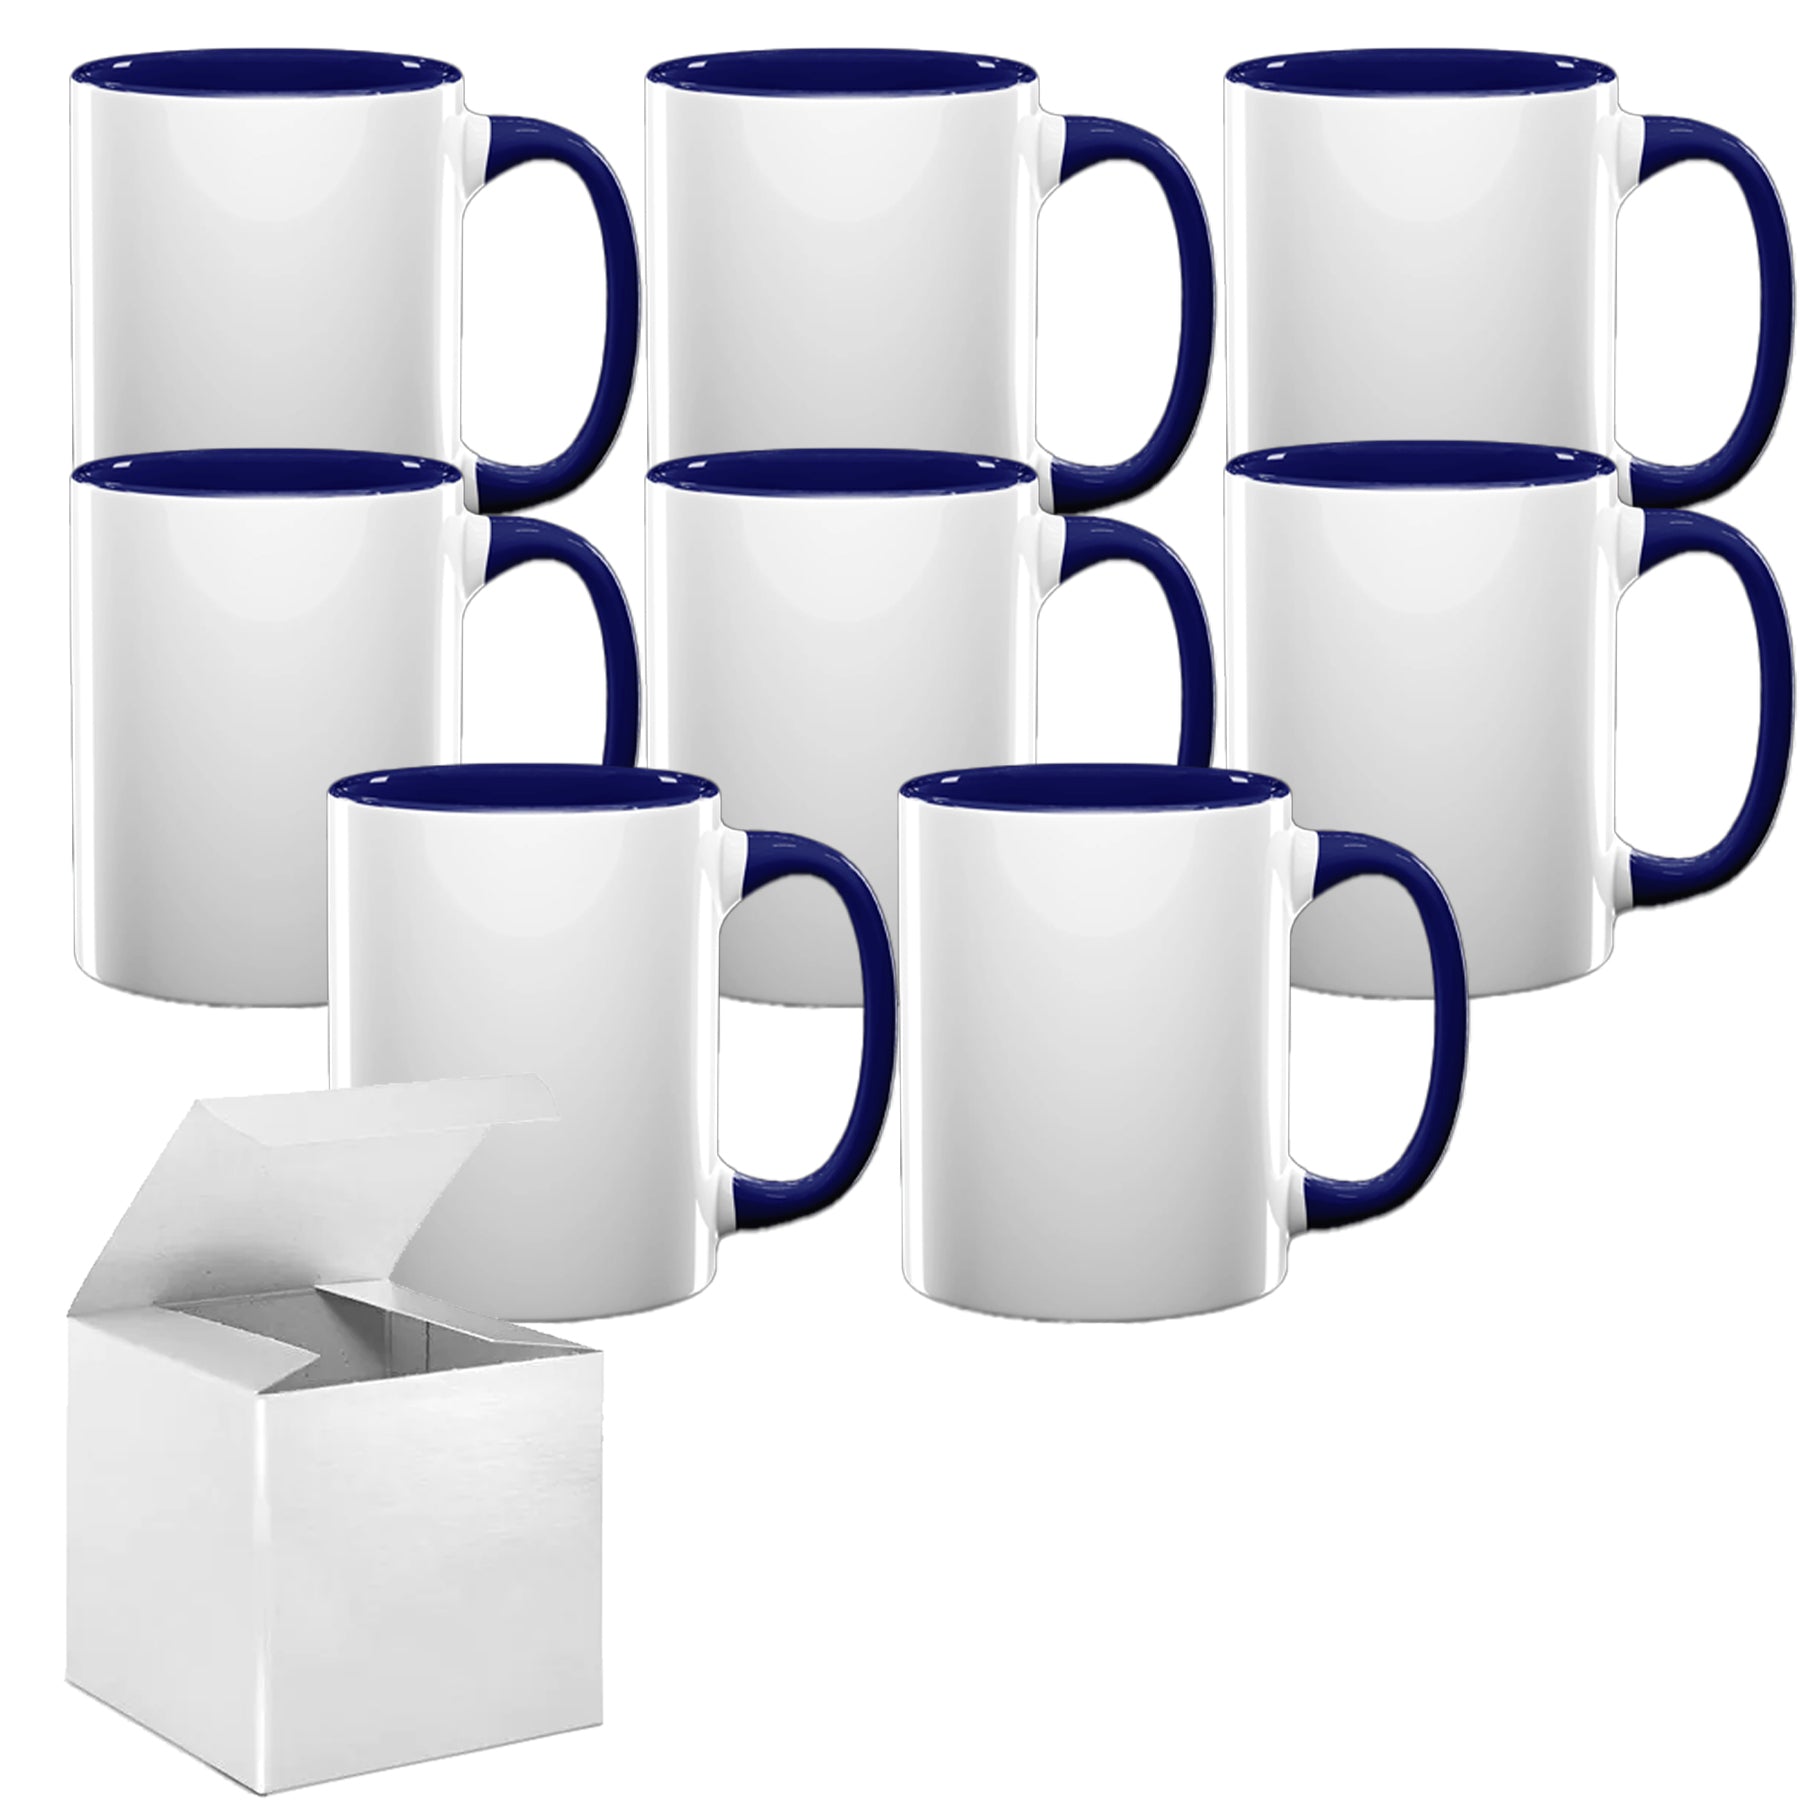 MUGSIE 24 Pcs 15oz Sublimation Mugs With Gift Mug Box. Mugs